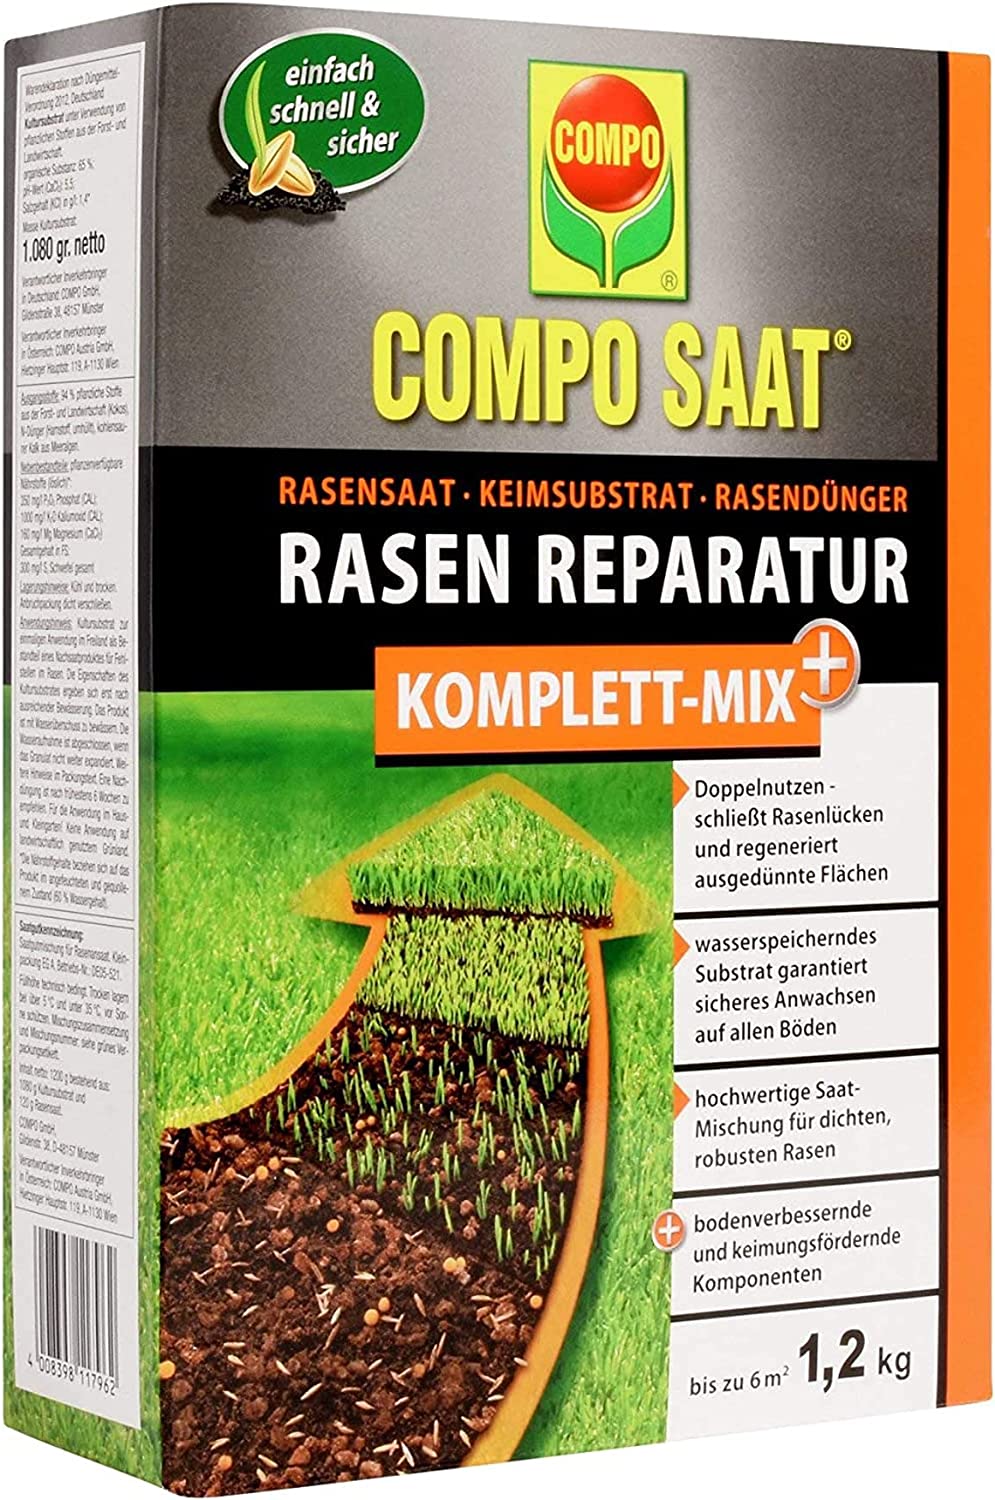 COMPO SAAT® Rasen Reparatur Komplett-Mix+ Schachtel